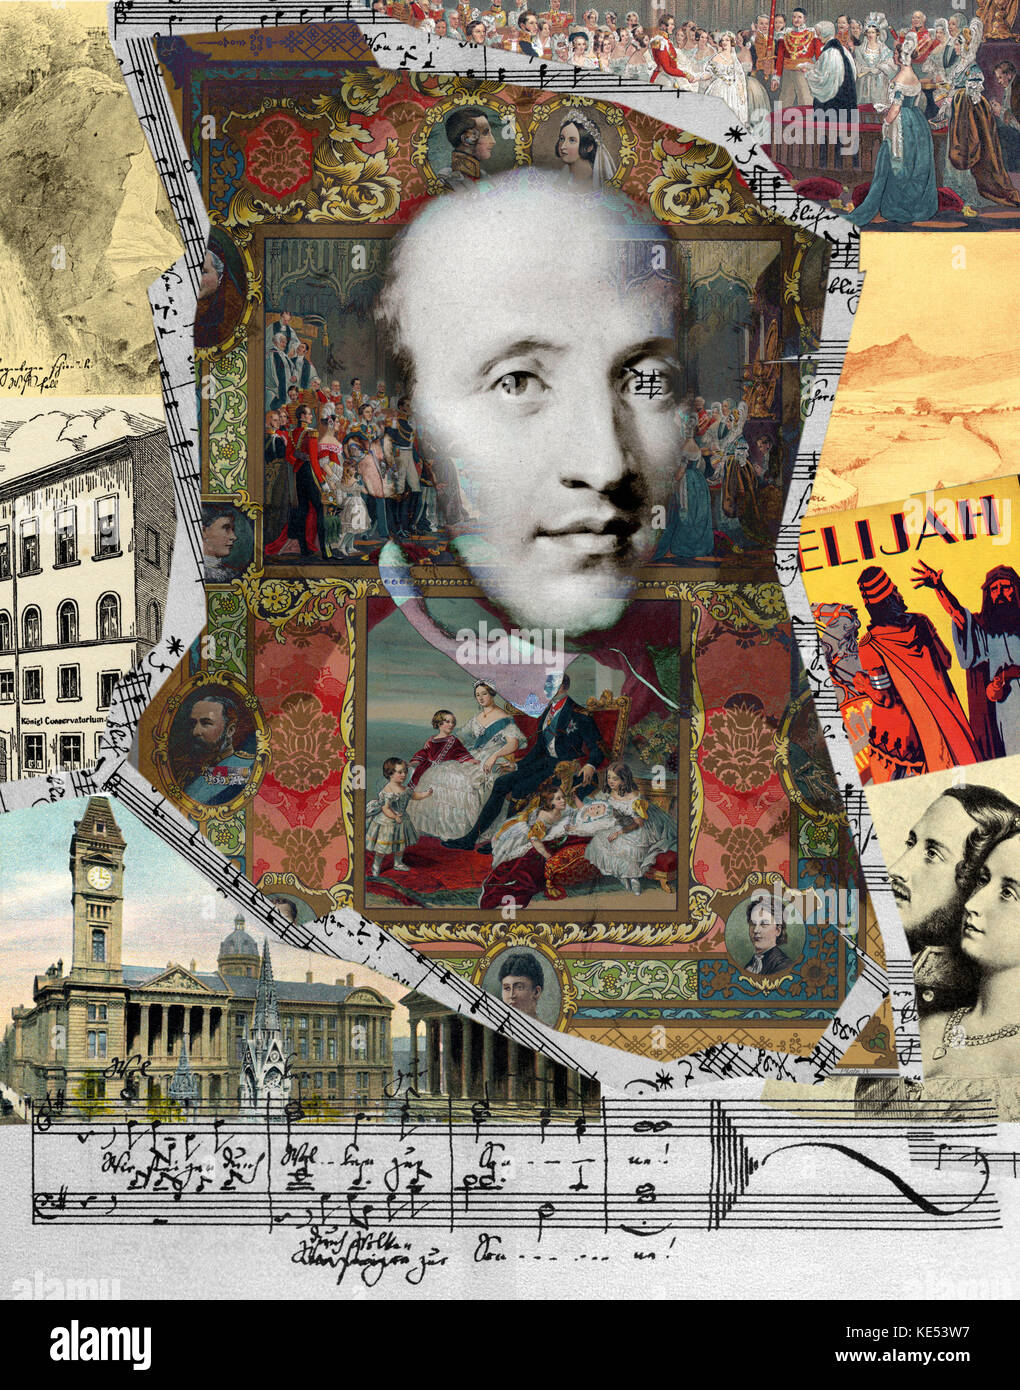 Classical music collage immagini e fotografie stock ad alta risoluzione -  Alamy